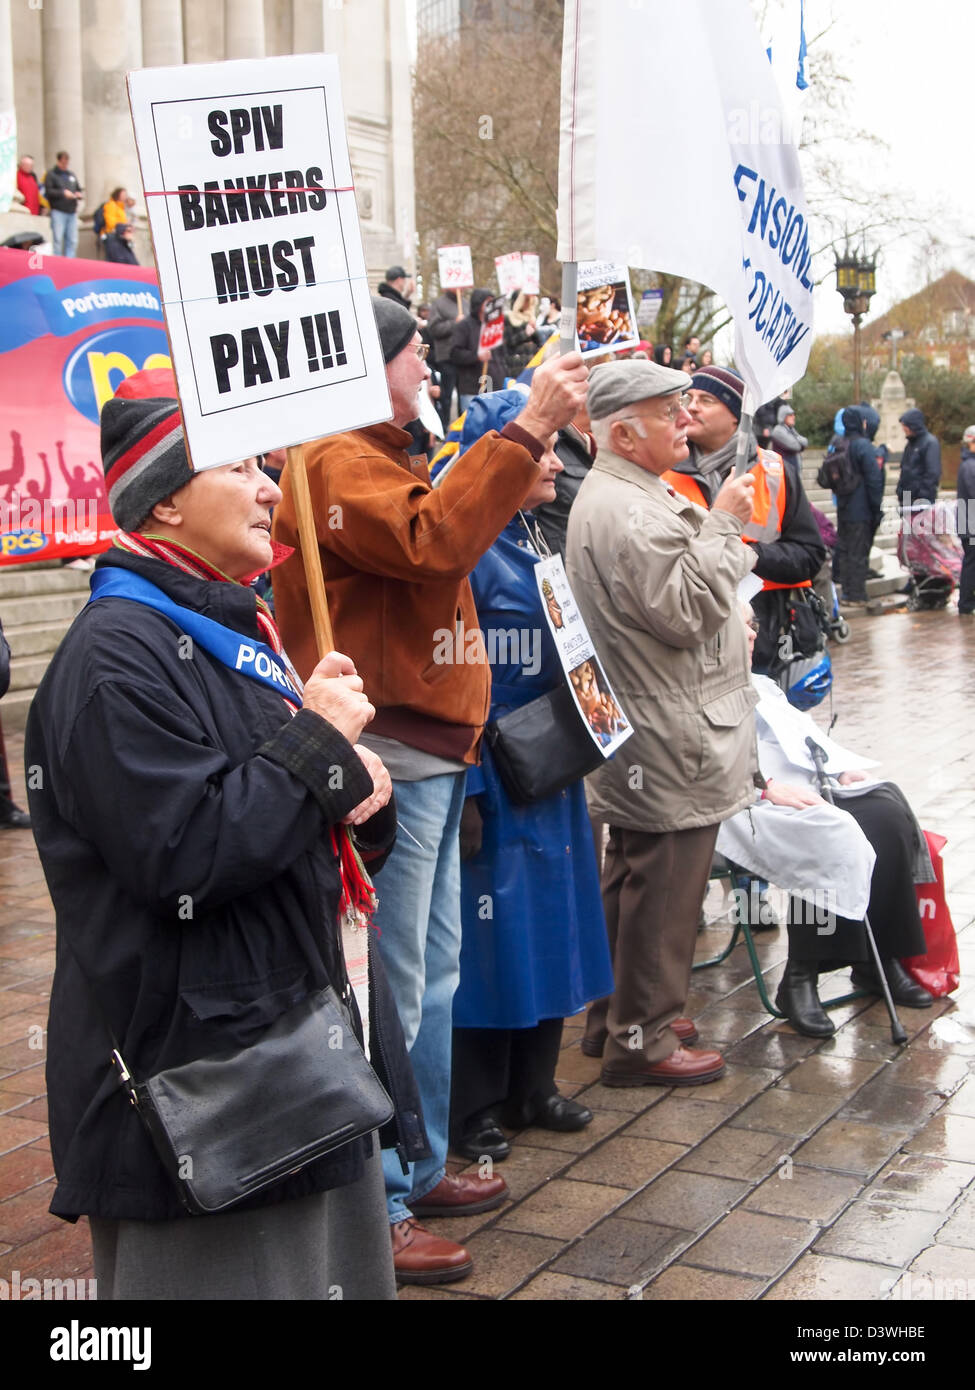 Pensionnés de lutte pendant une journée d'action par les travailleurs du secteur public contre les modifications au régime de pension. Banque D'Images